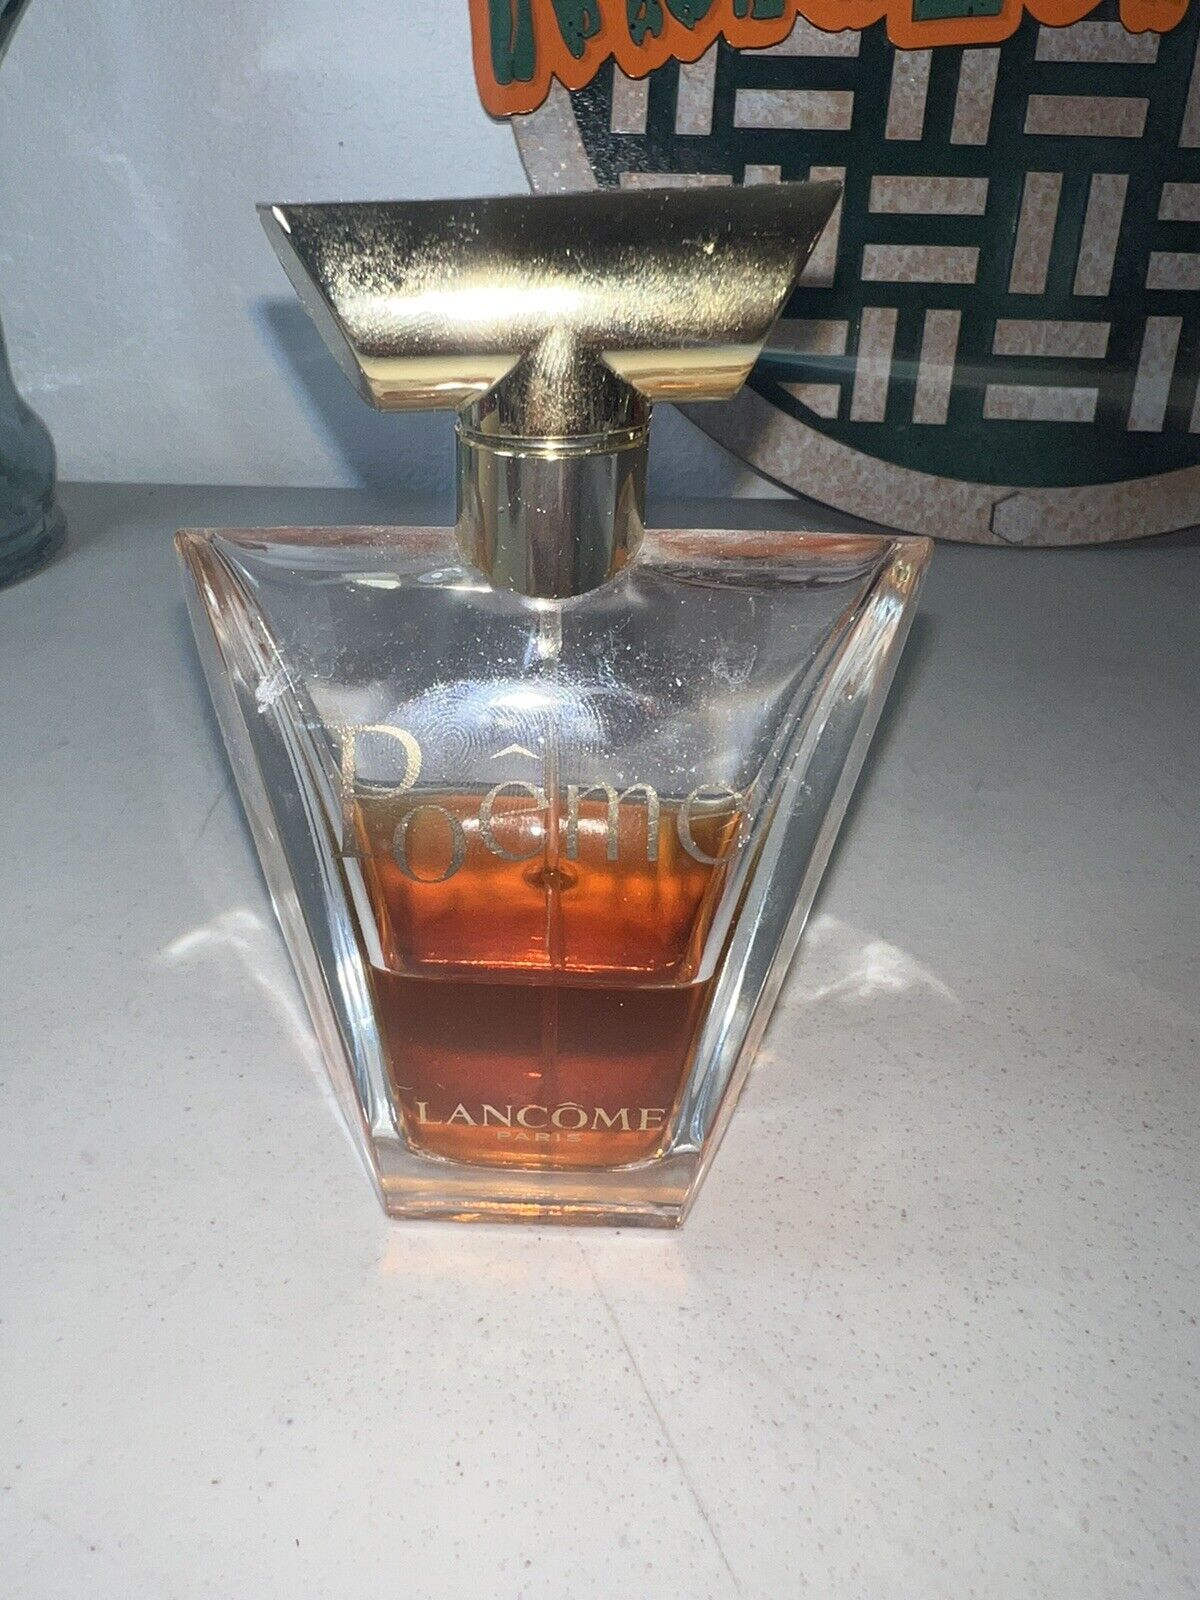 LANCOME Vintage POEME Eau De Parfum Spray 3.4 OZ with Top Cap About 40% Full